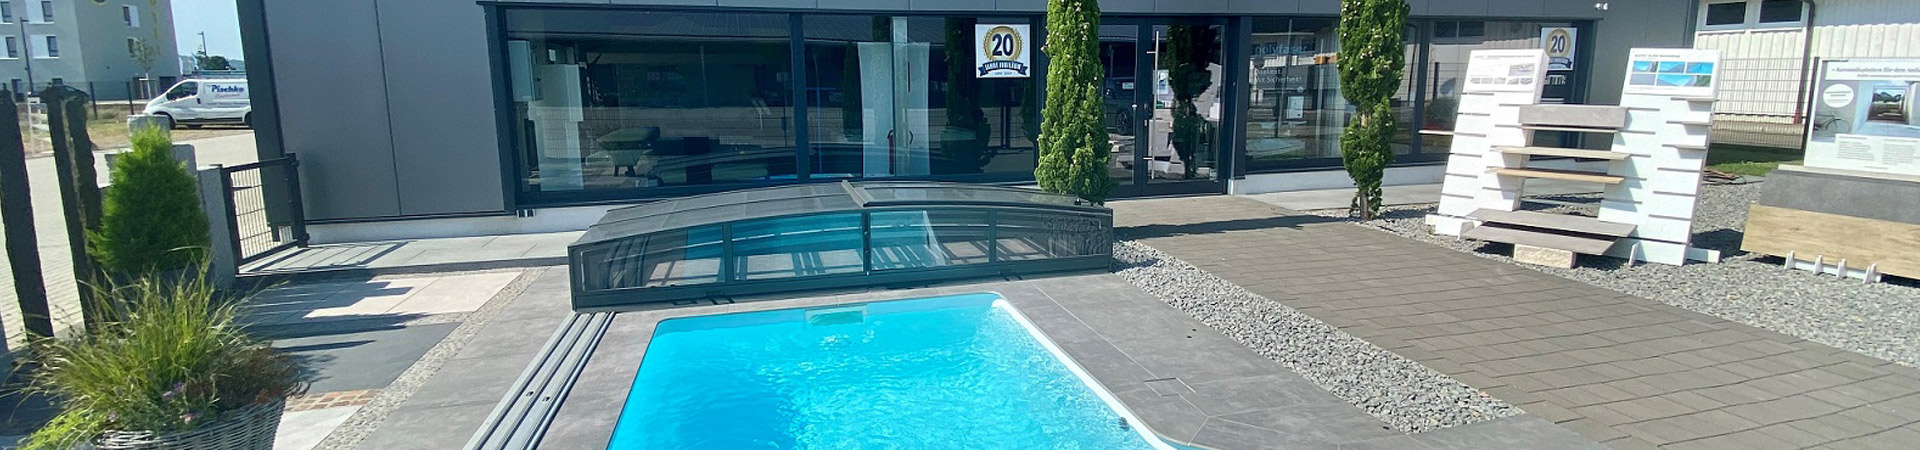 Ausstellungsräume Pischke Pool-Center in Ettenheim